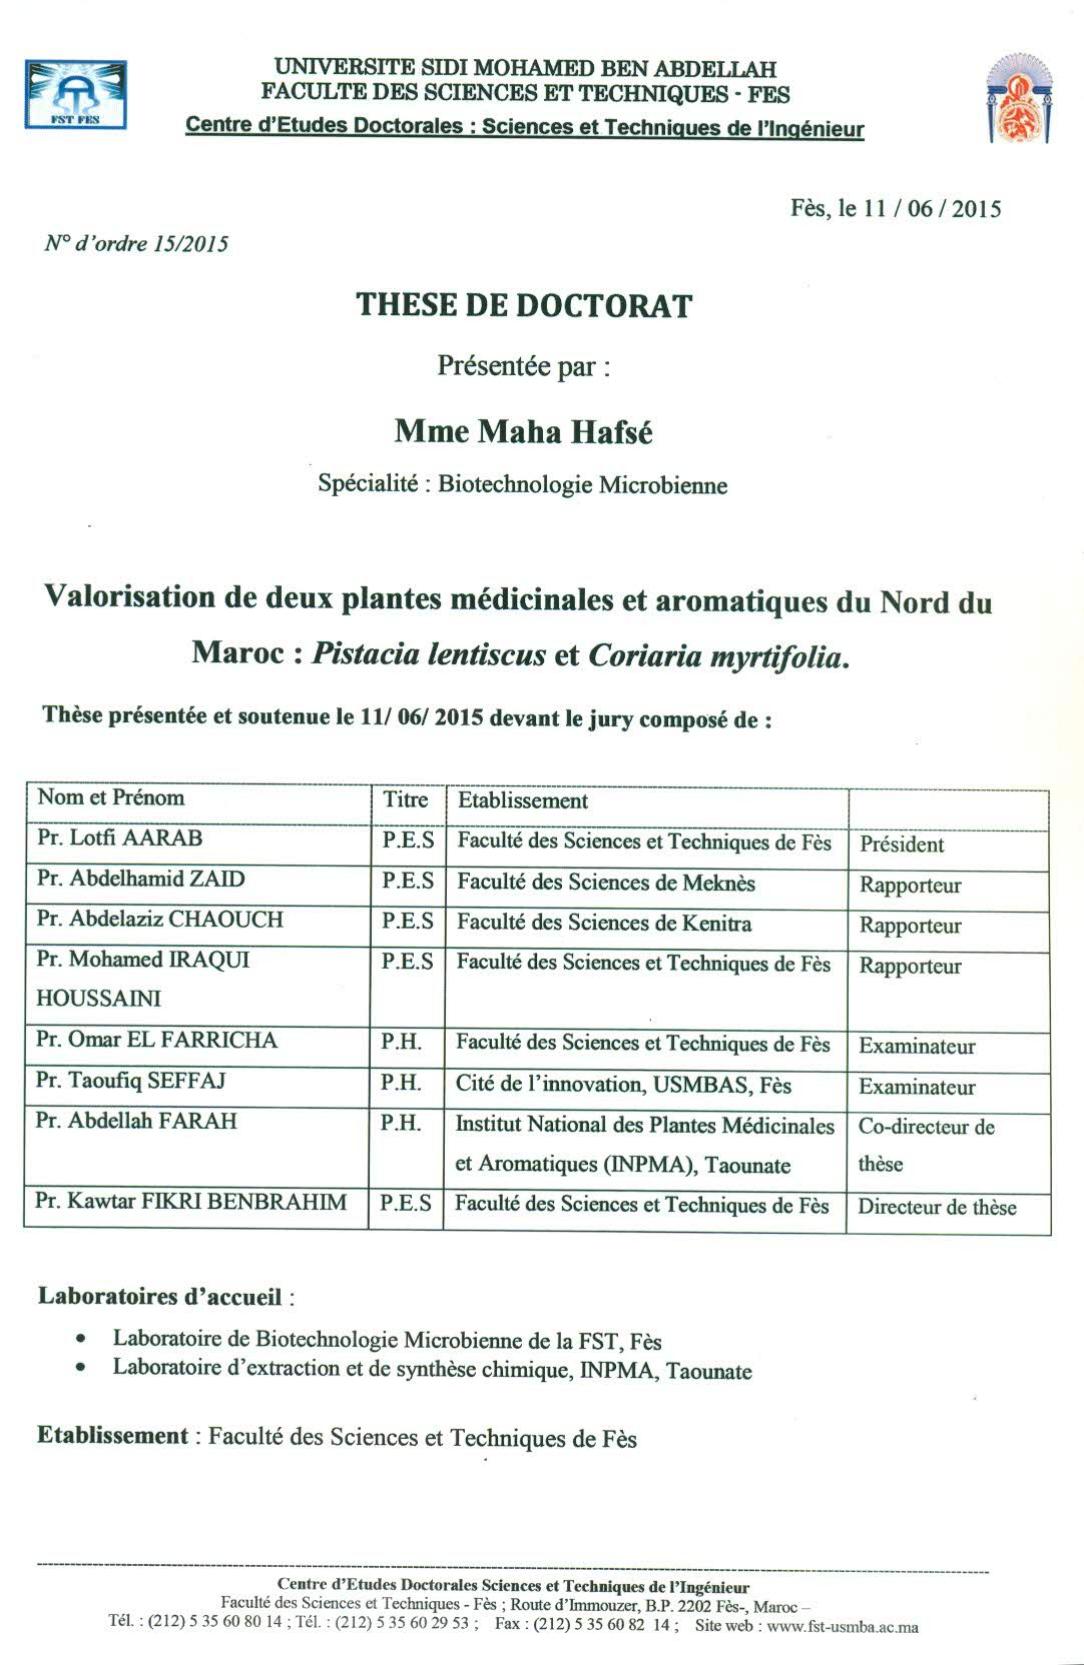 Valorisation de deux plantes médicinales et aromatiques du Nord du Maroc: Pistacia lentiscus et Coriaria myrtifolia